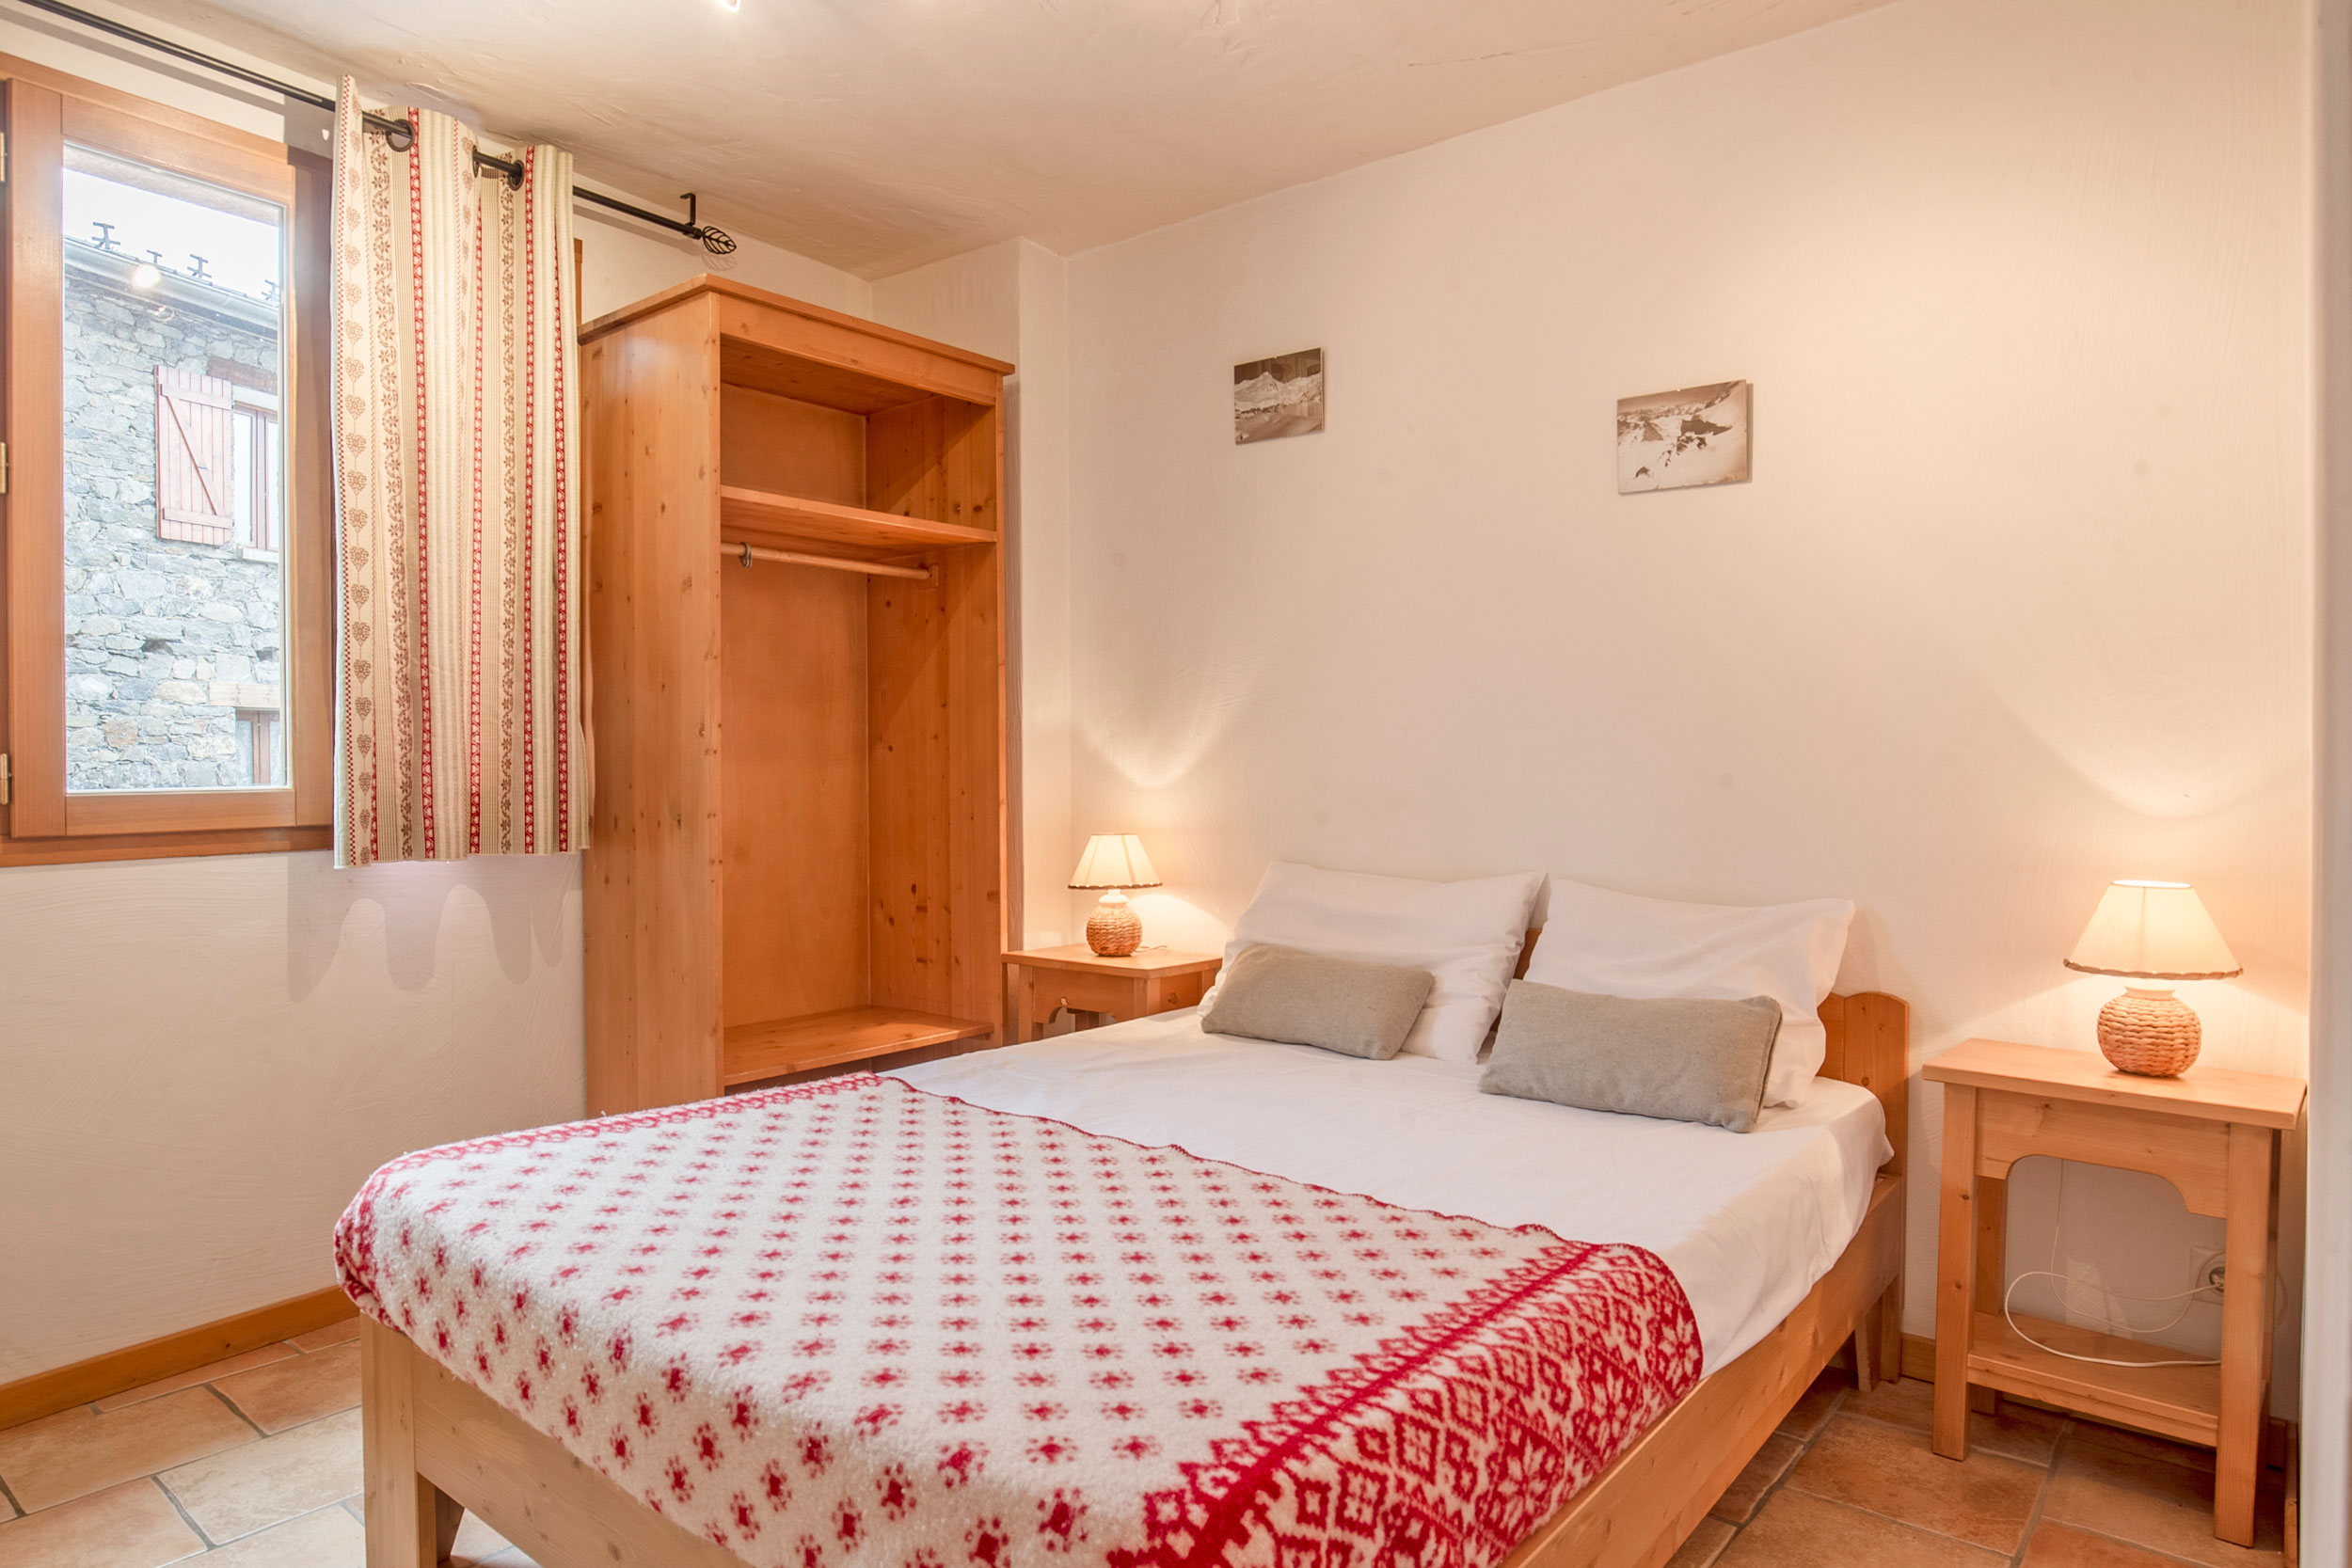 Chalet-Acacia: Appartement für 4 Personen - Schlafzimmer